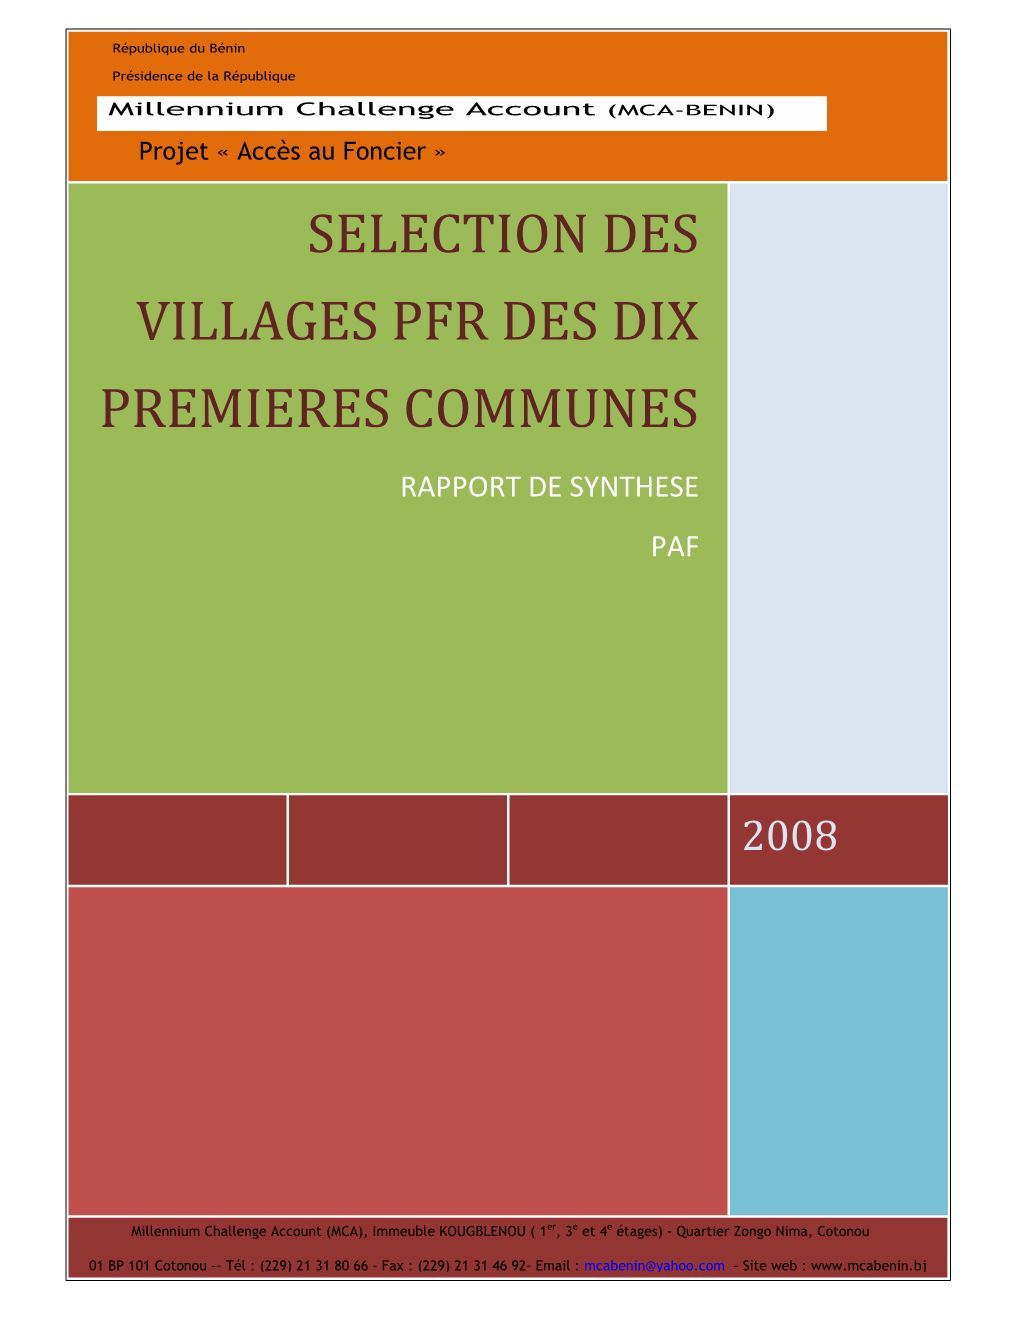 Selection Des Villages Pfr Des Dix Premieres Communes